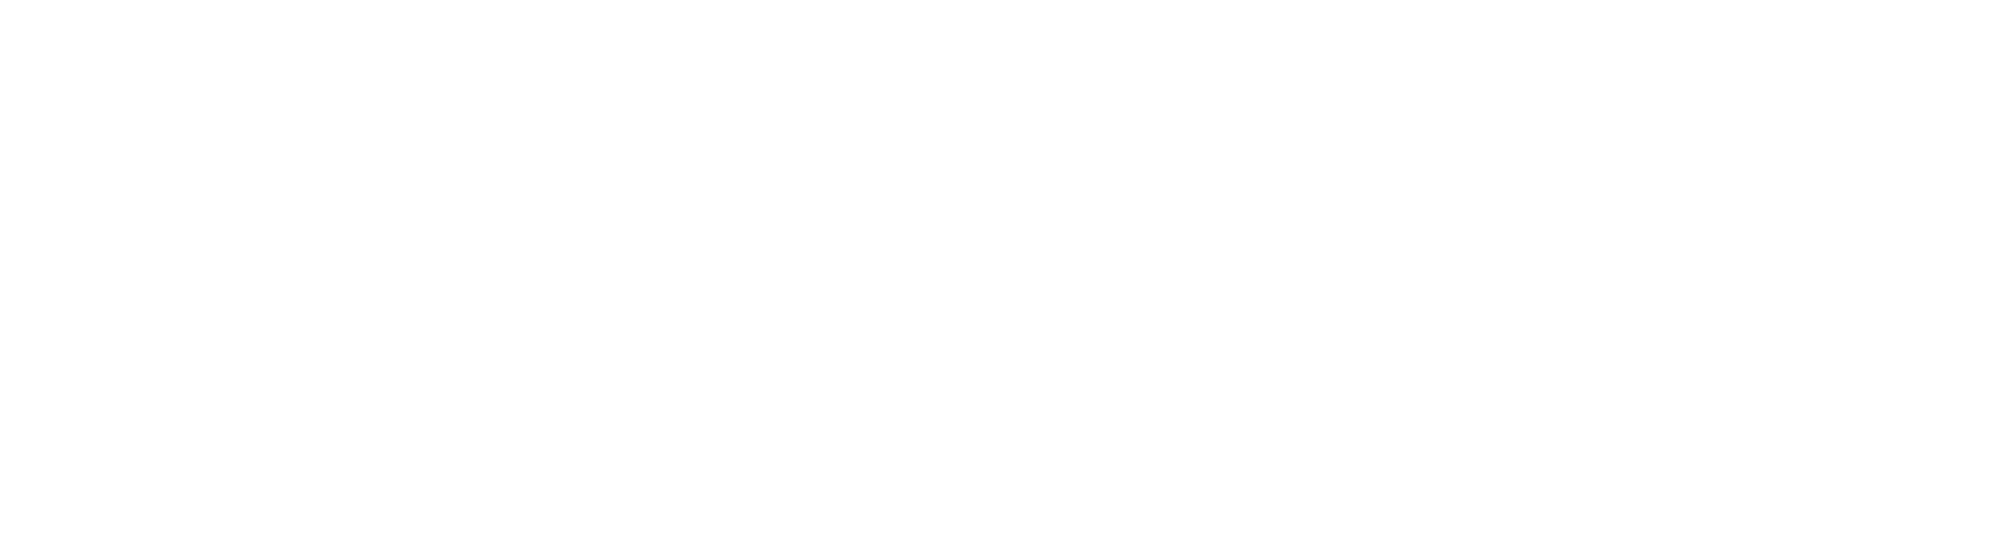 W_DEGROOF_PETERCAM